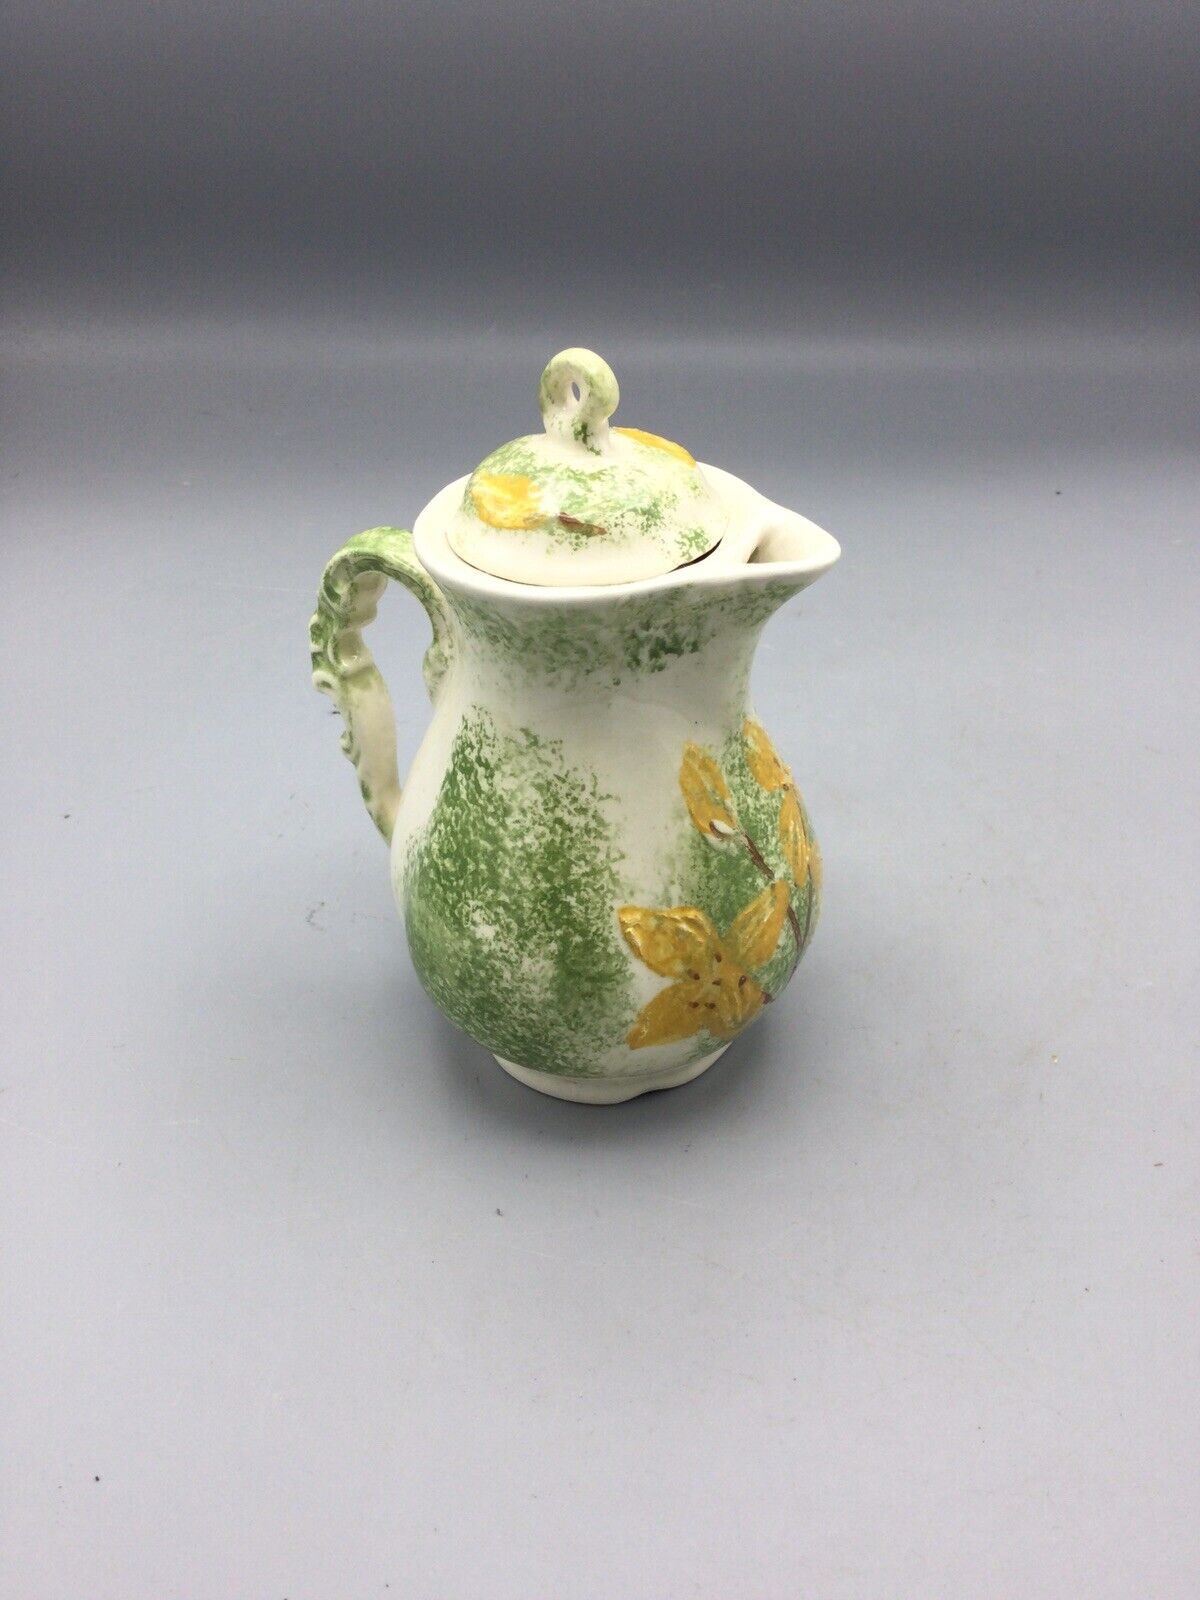 4 1/2” In Singing River Original Vintage Ceramics Vase Yellow Flower Pedals